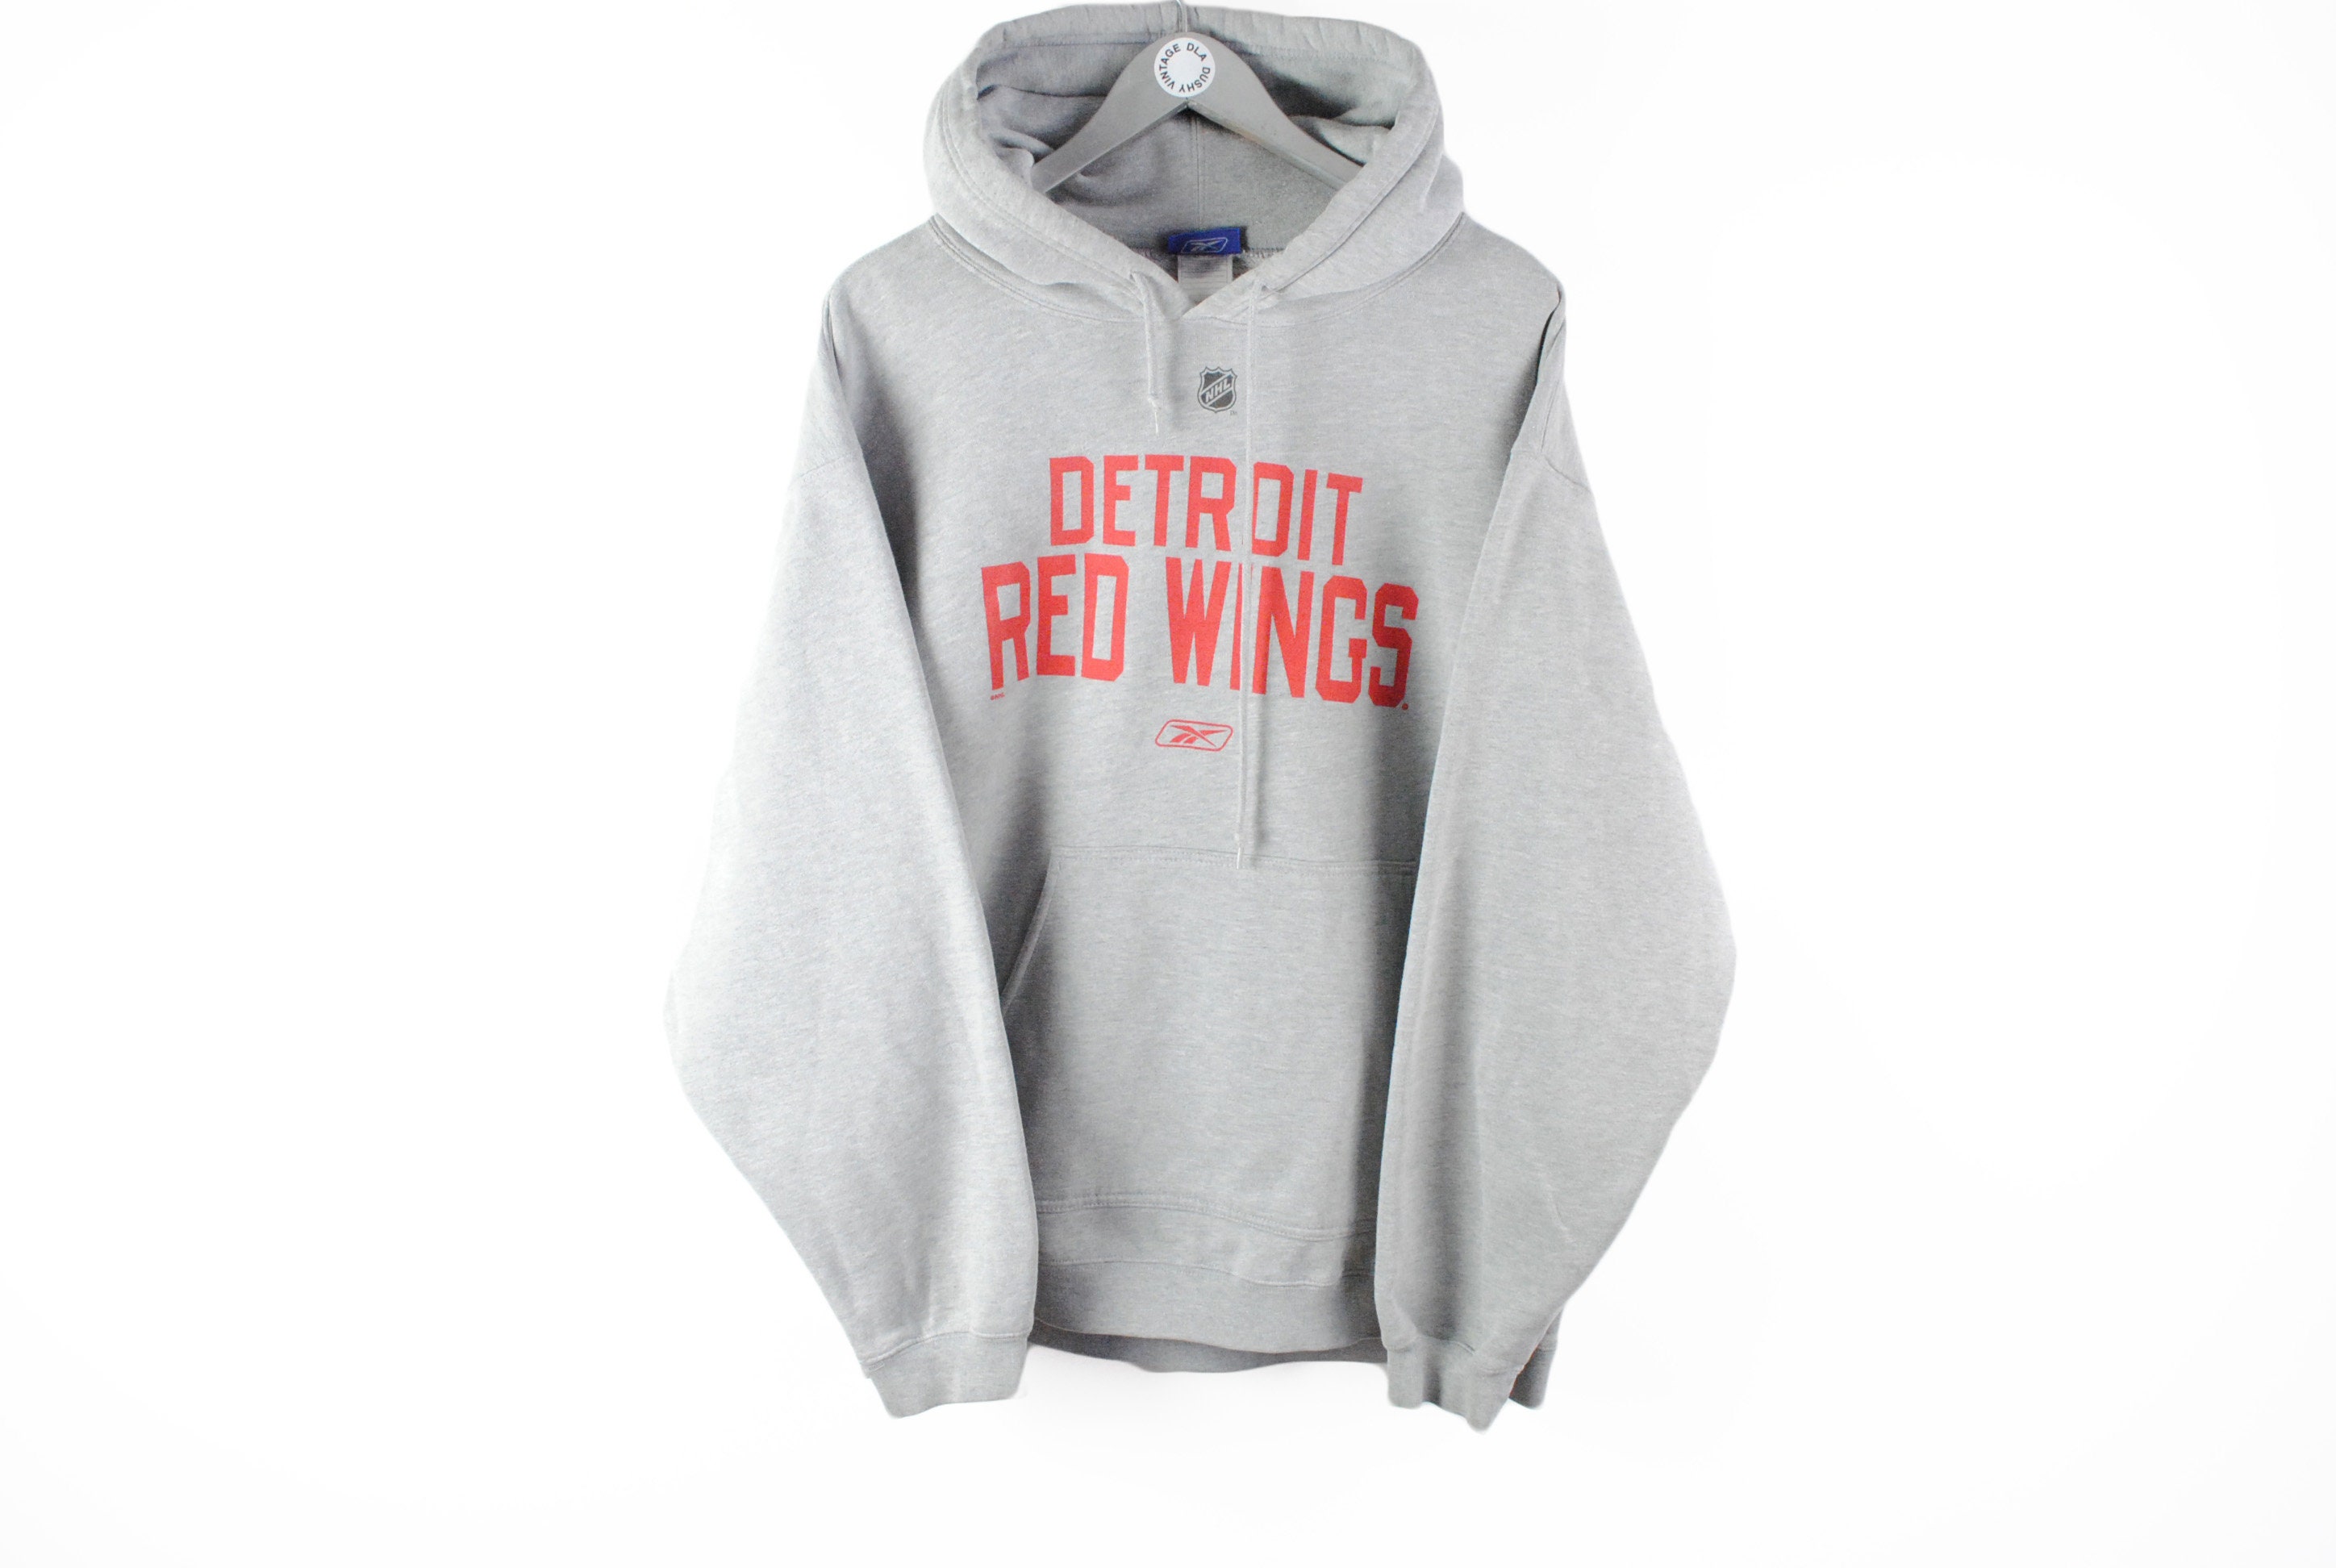 Adidas Men's Detroit Red Wings NHL Hockey League Hoodie Sweatshirt